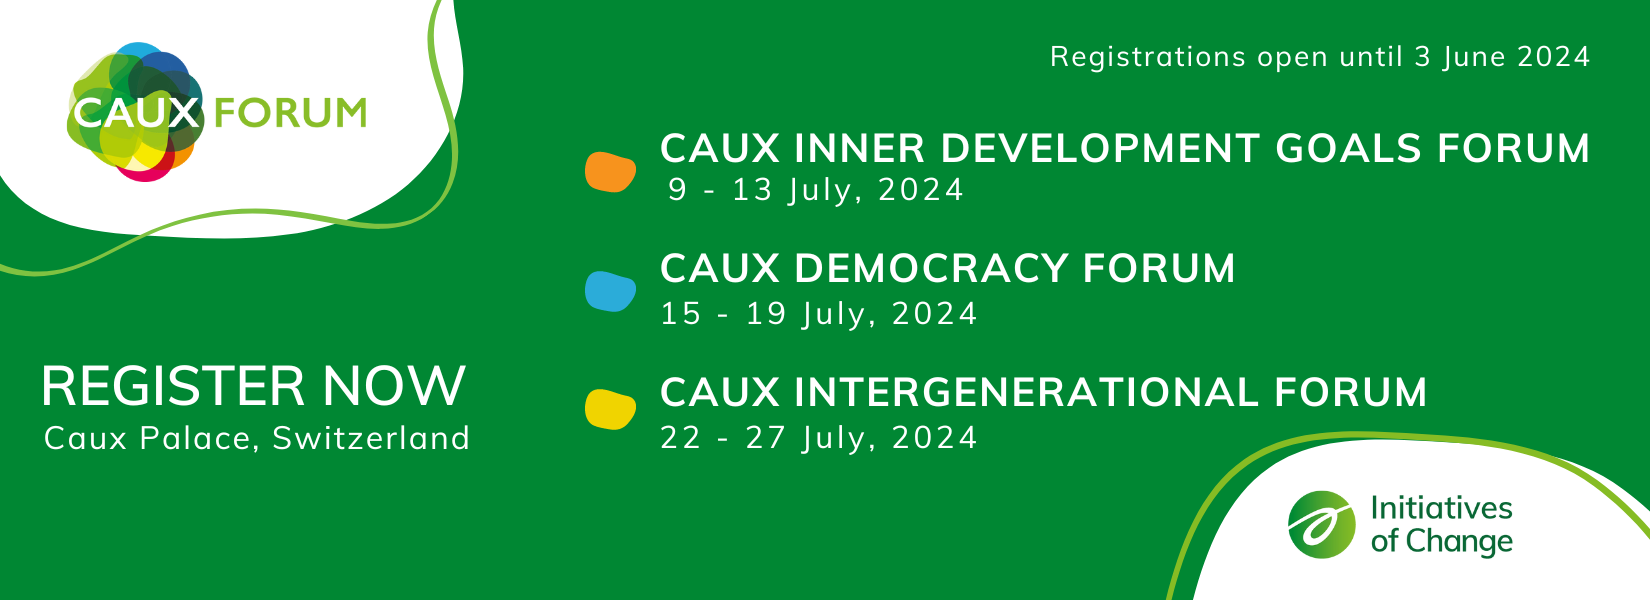 Caux Forum 2024 general Register now EN